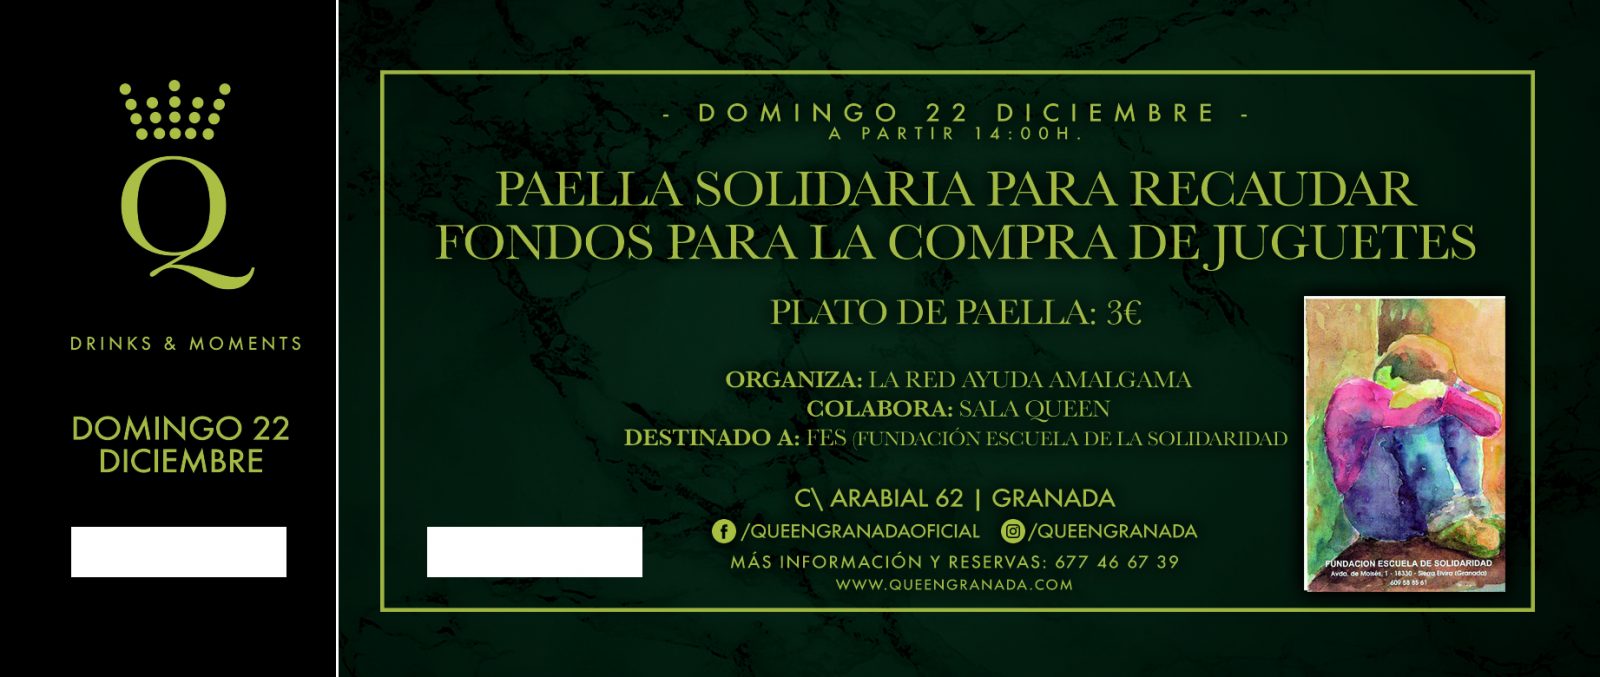 Grupo Queen - Eventos: «Paella Solidaria» – Recaudación Fondos Fundación Escuela de la Solidaridad